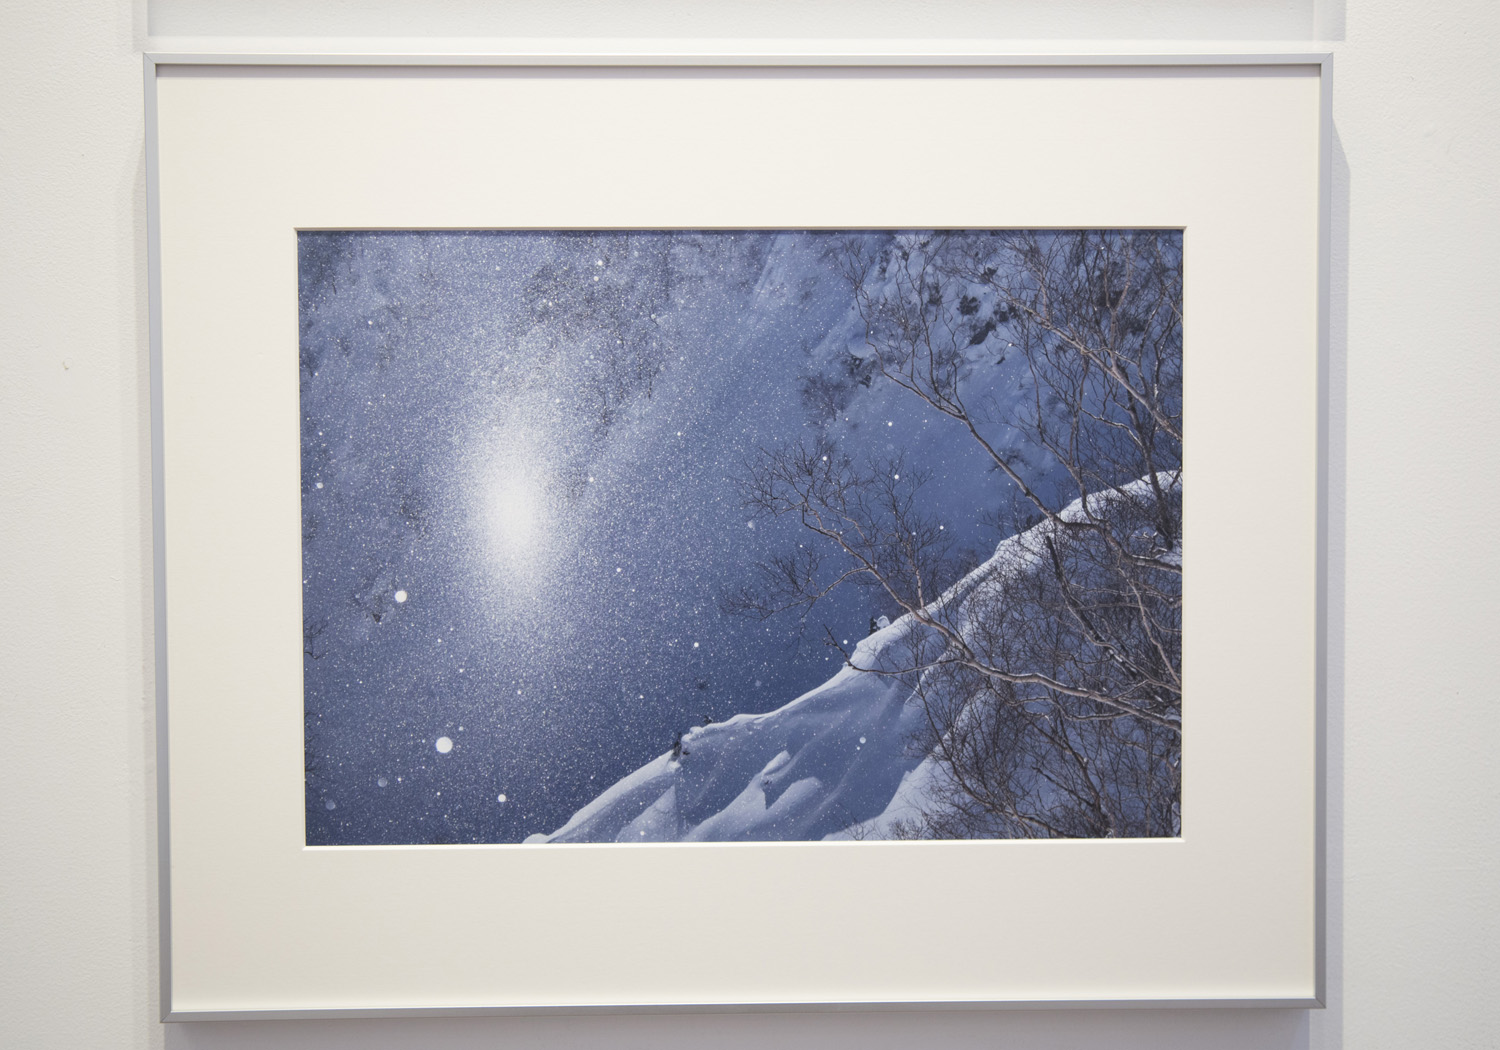 엔도 여씨의 사진에는 어딘가 따뜻한 온기와 상냥함을 느낄 수 있다.설산의 일상의 모습도 그가 촬영하는 것으로 예술로 표현되어 간다